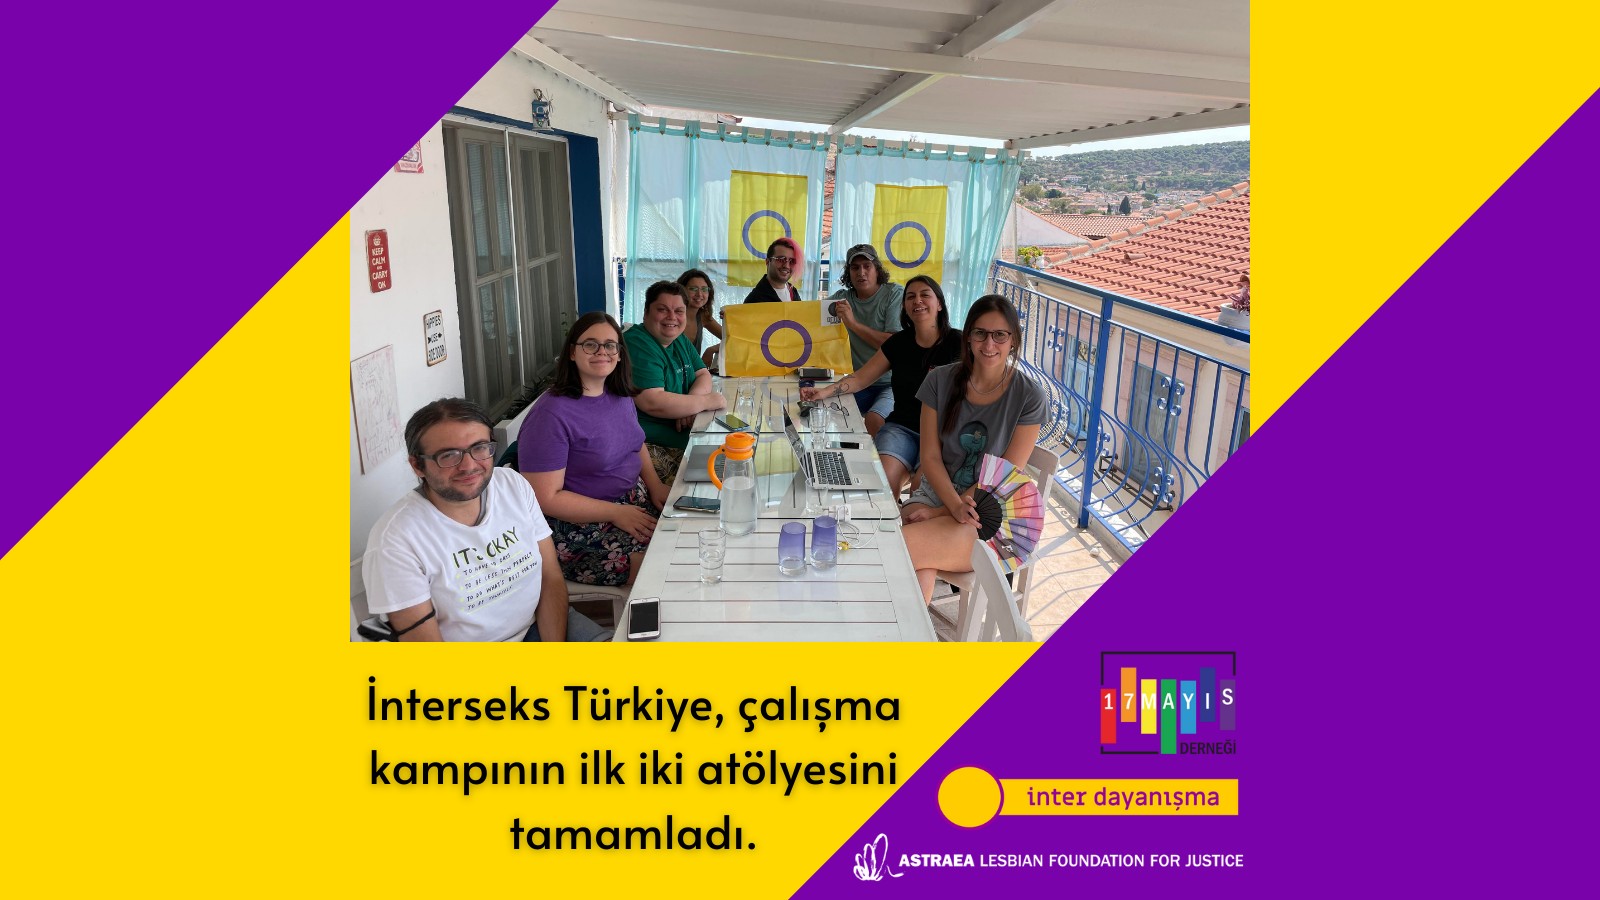 İnterseks Türkiye, Çalışma Kampının İlk İki Atölyesini Tamamladı - 17 Mayıs